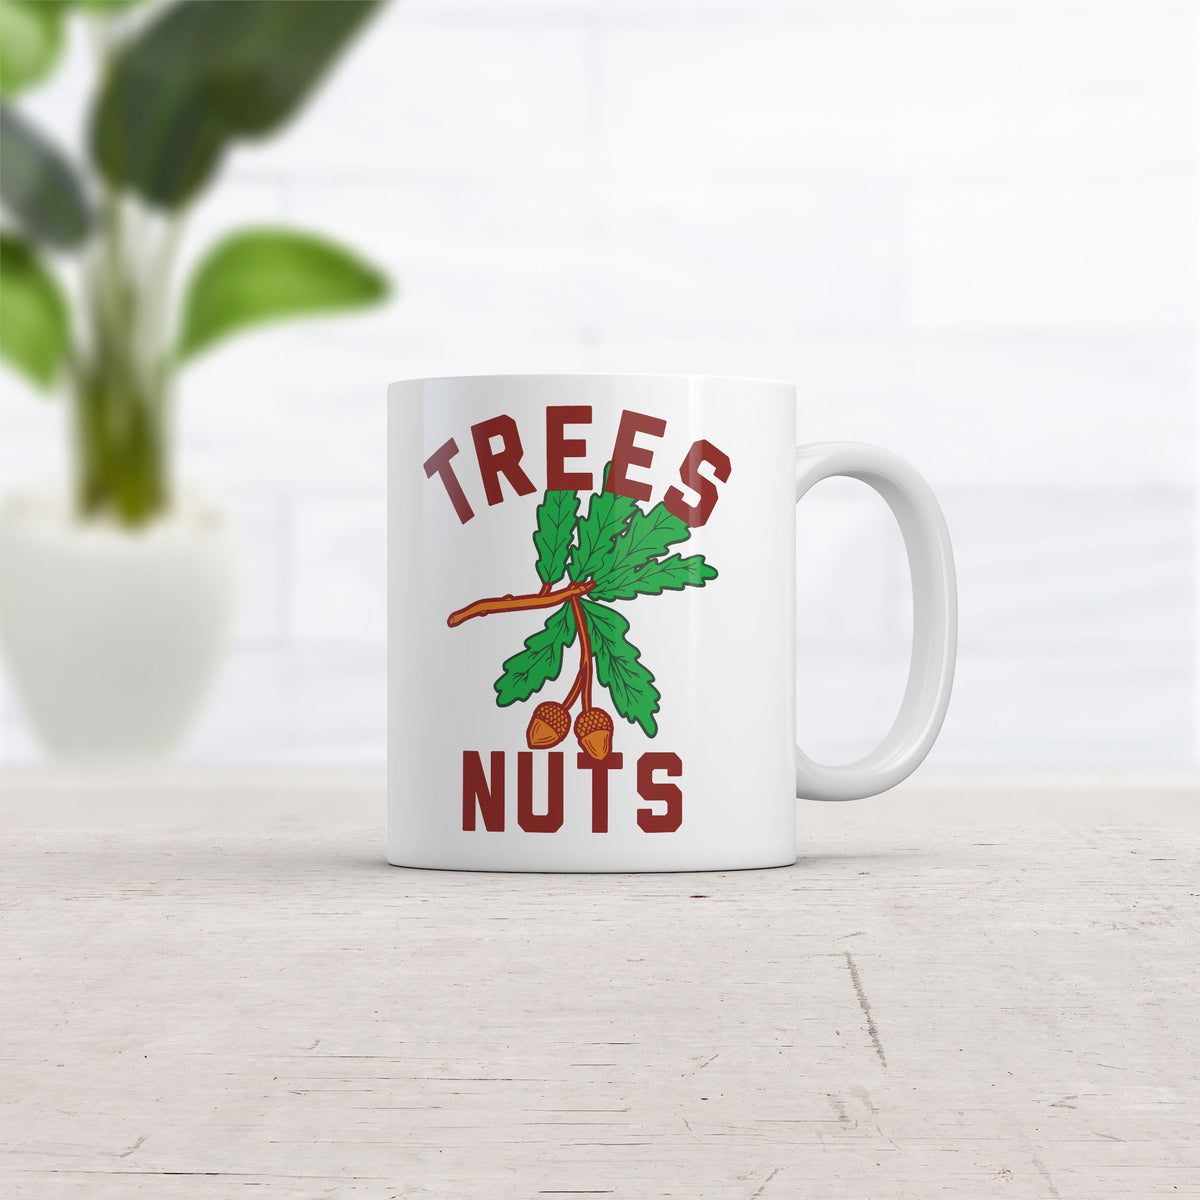 Trees Nuts Mug